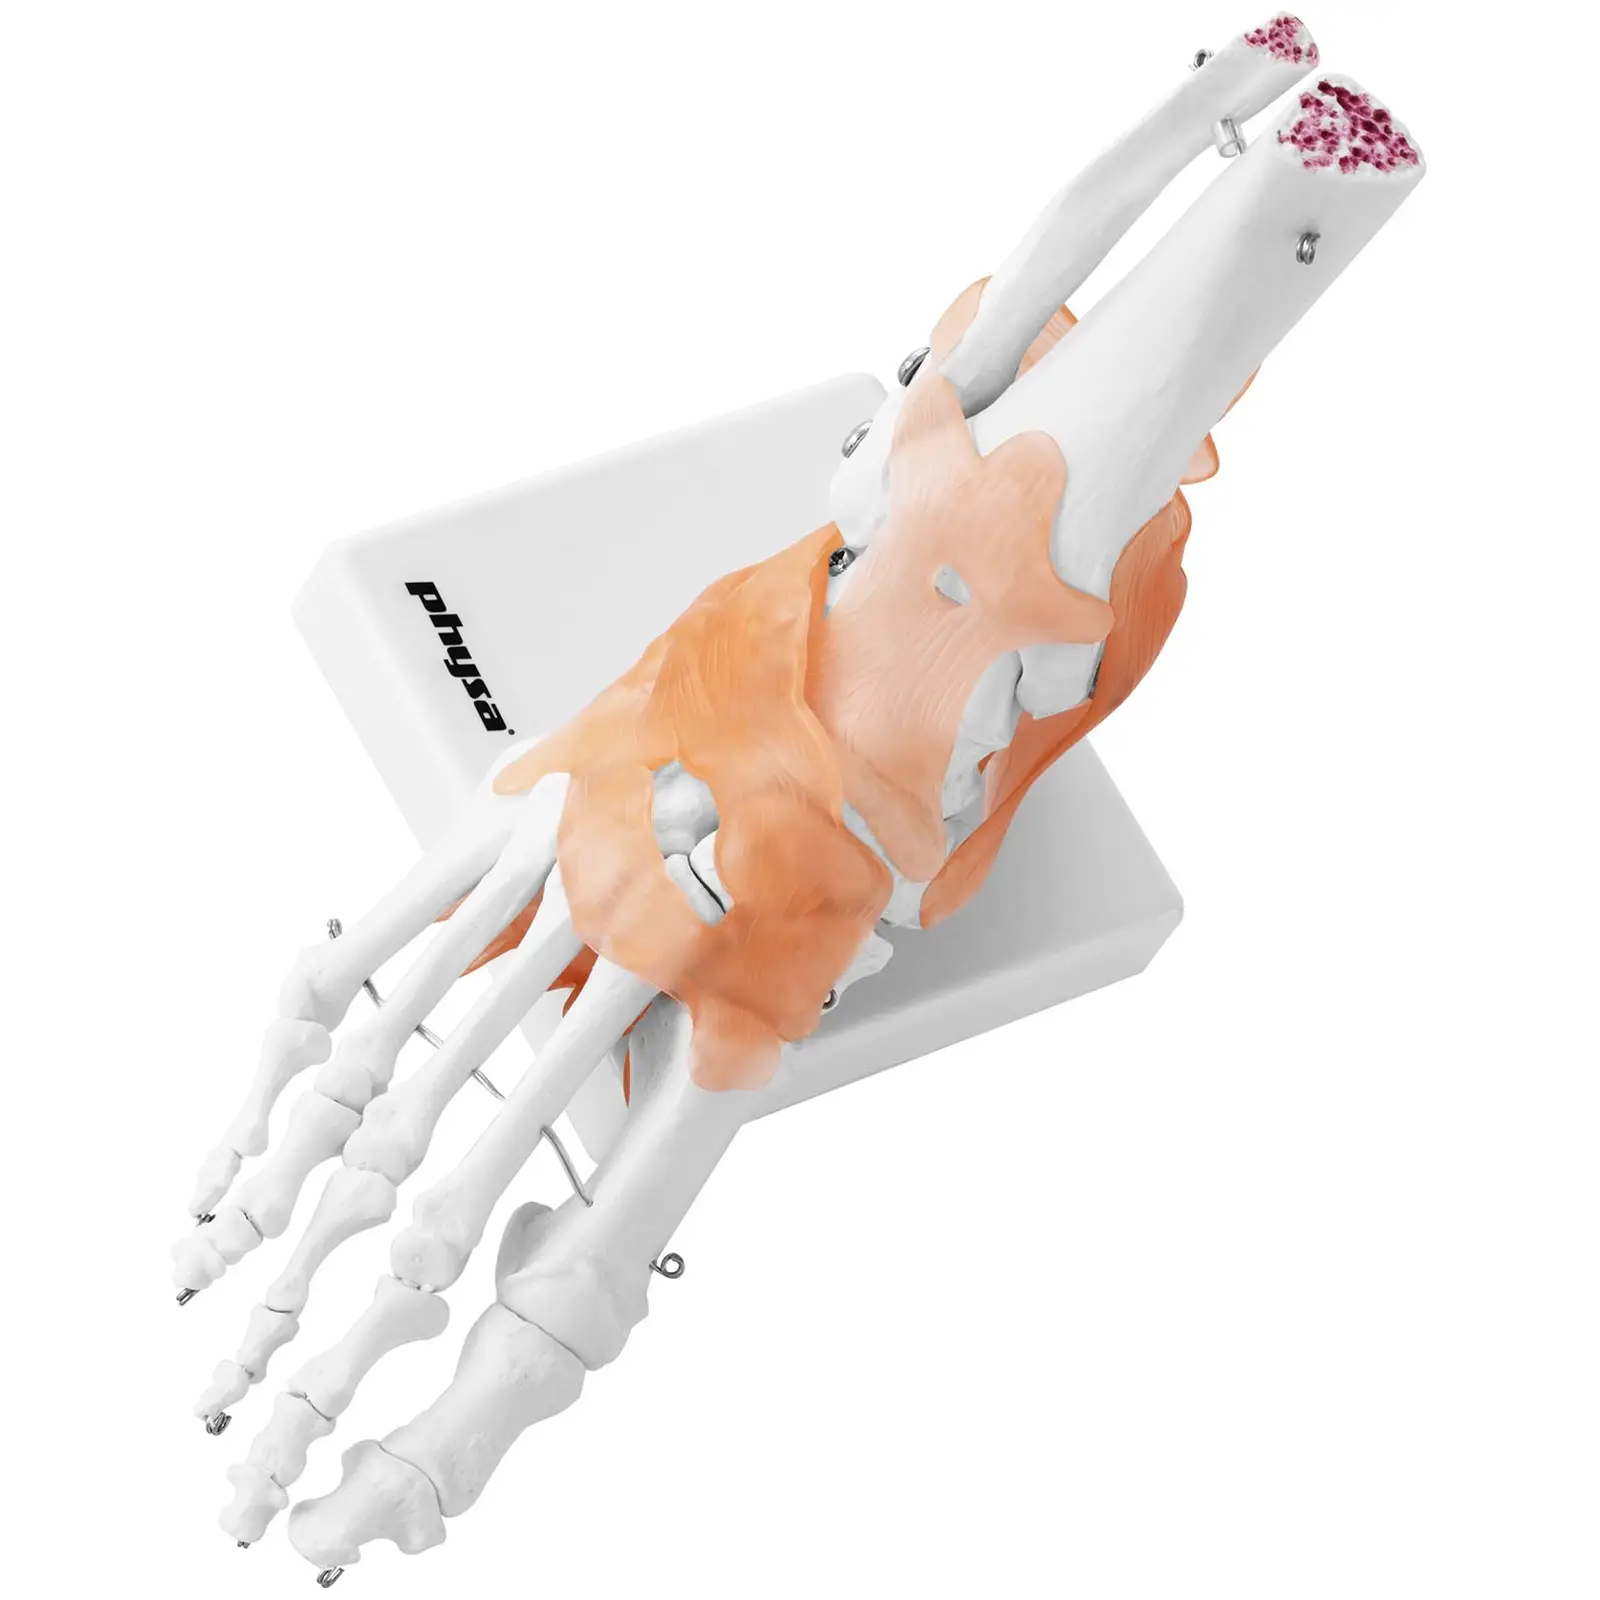 Model kostry chodidla a kotníku - s vazy a klouby